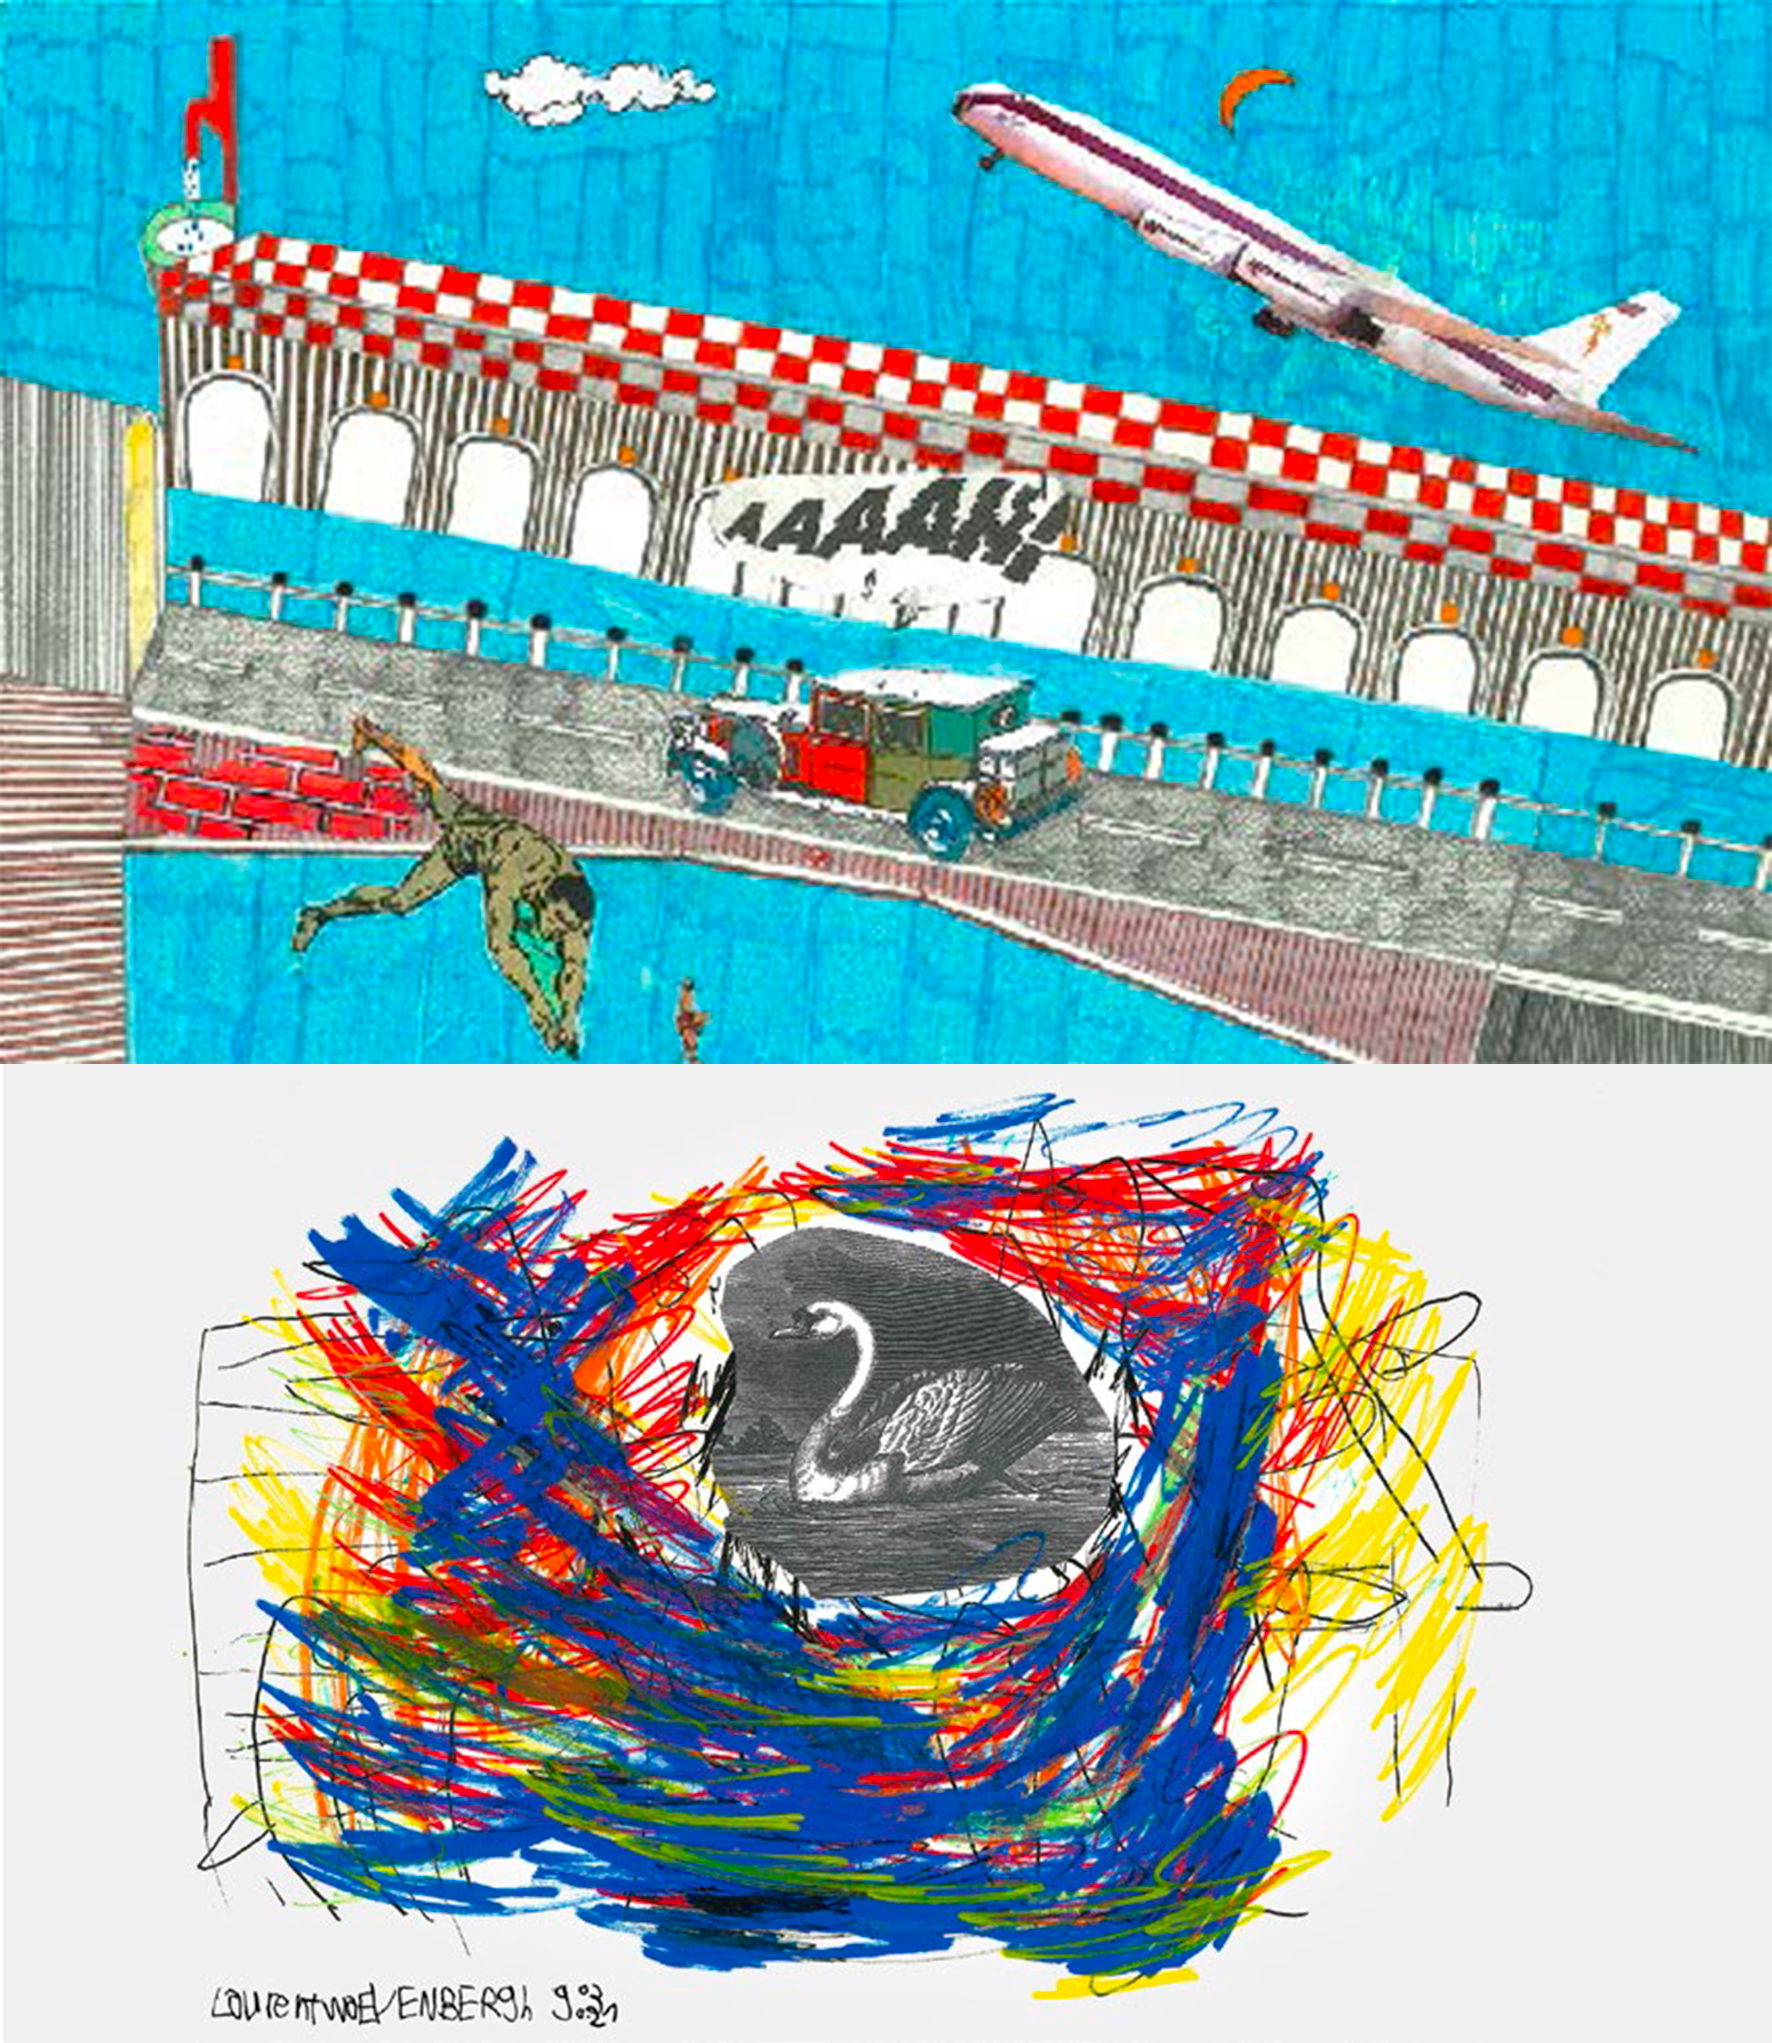 Sur l'image figure des oeuvres des artistes de l'exposition, au feutre. L'image du haut représente un avion qui décolle et un homme qui plonge d'un pont. En bas, au centre d'un mélange de couleurs bleu, rouge et rouge, on voit un cygne en noir et blanc.